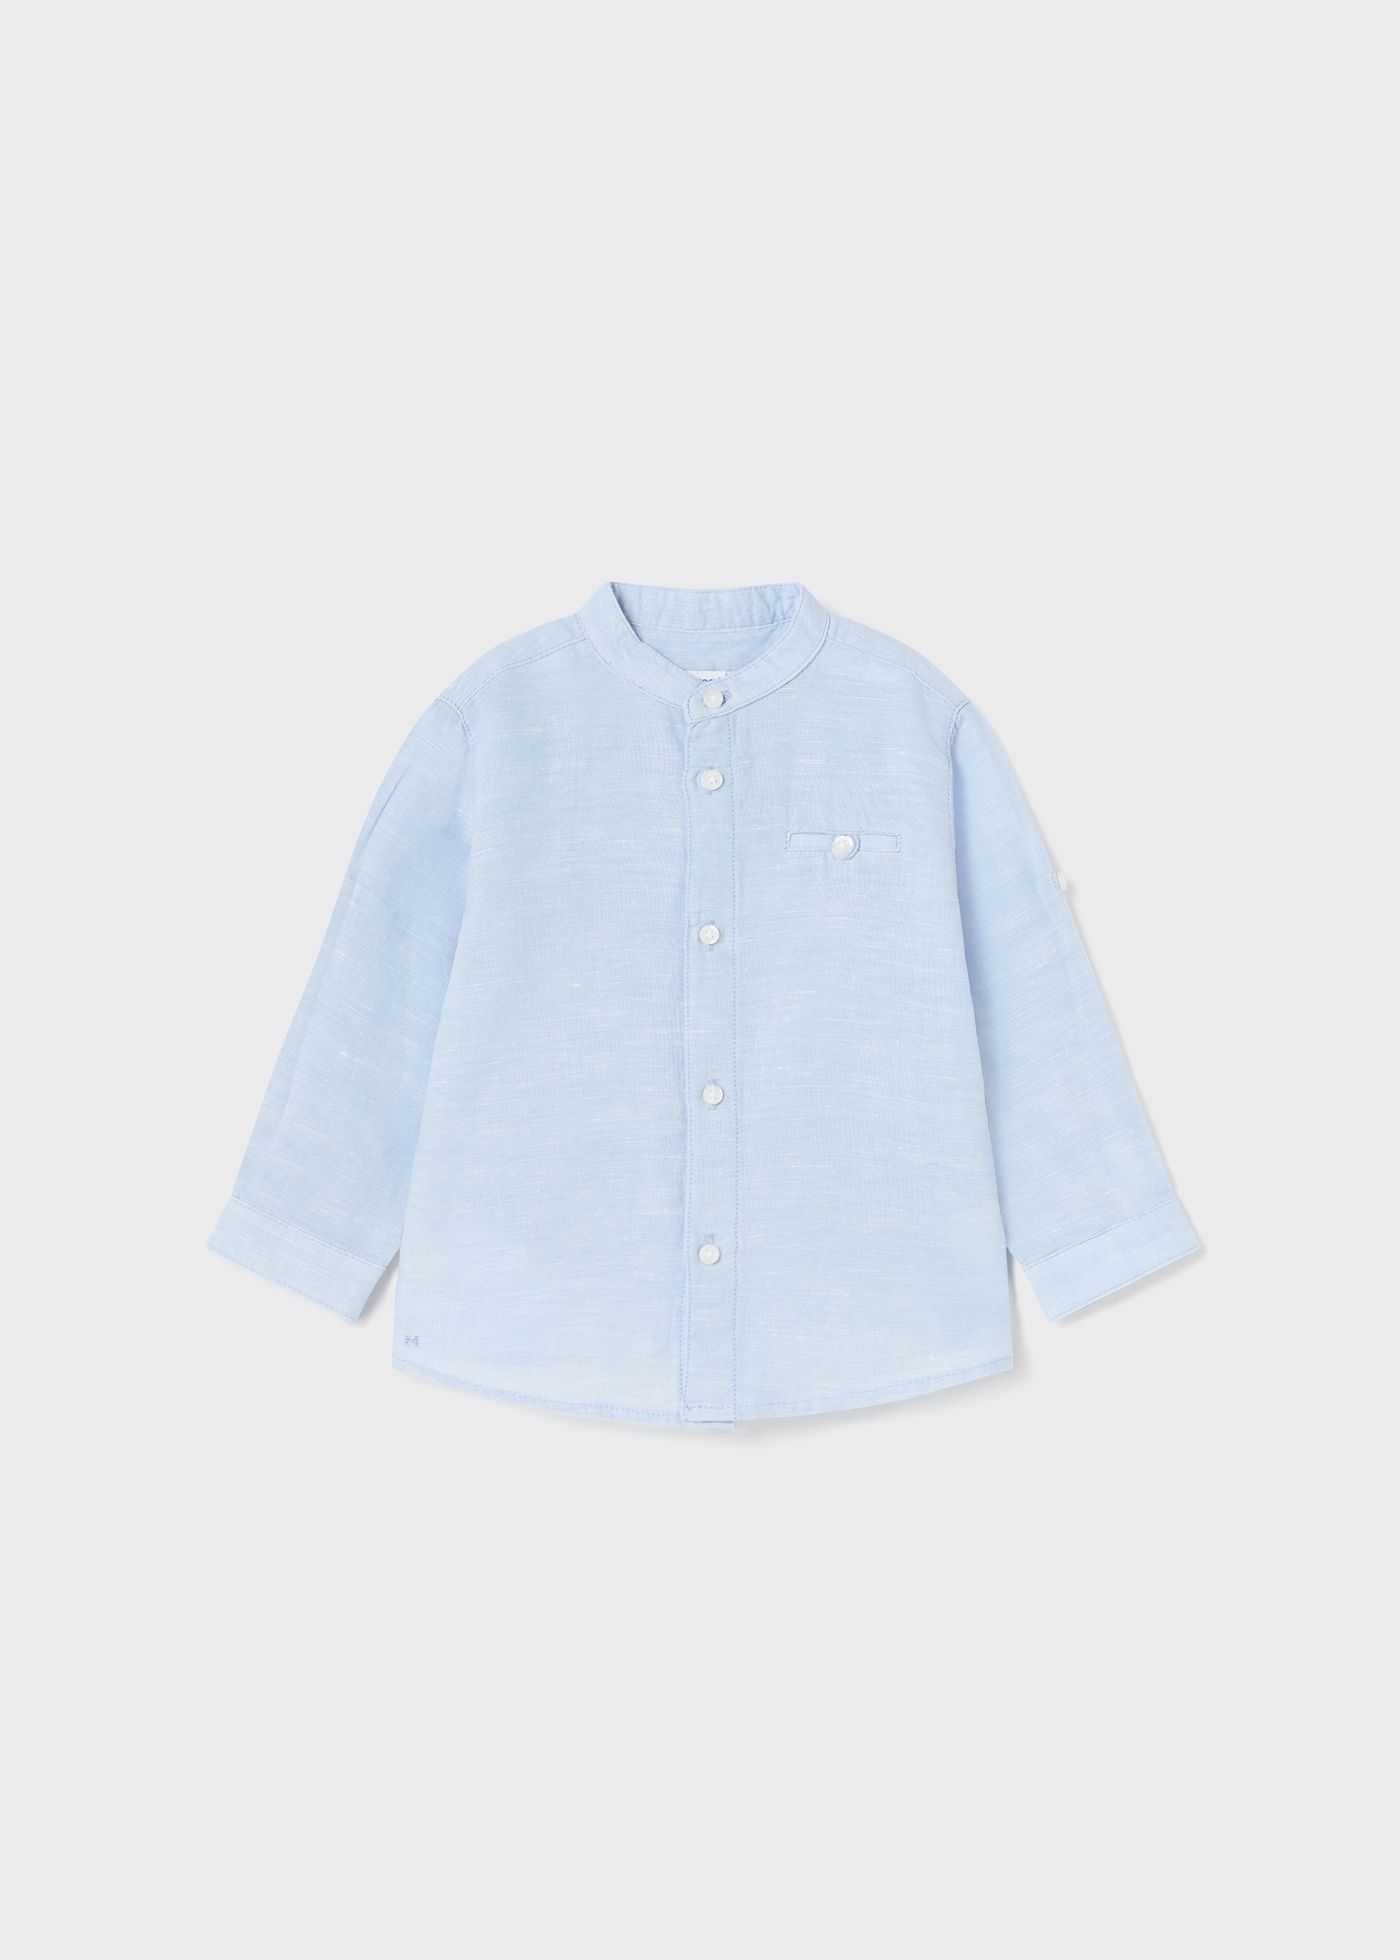 (image for) Camicia manica lunga con colletto alla coreana lino neonato mayoral Art. 23-01116-070